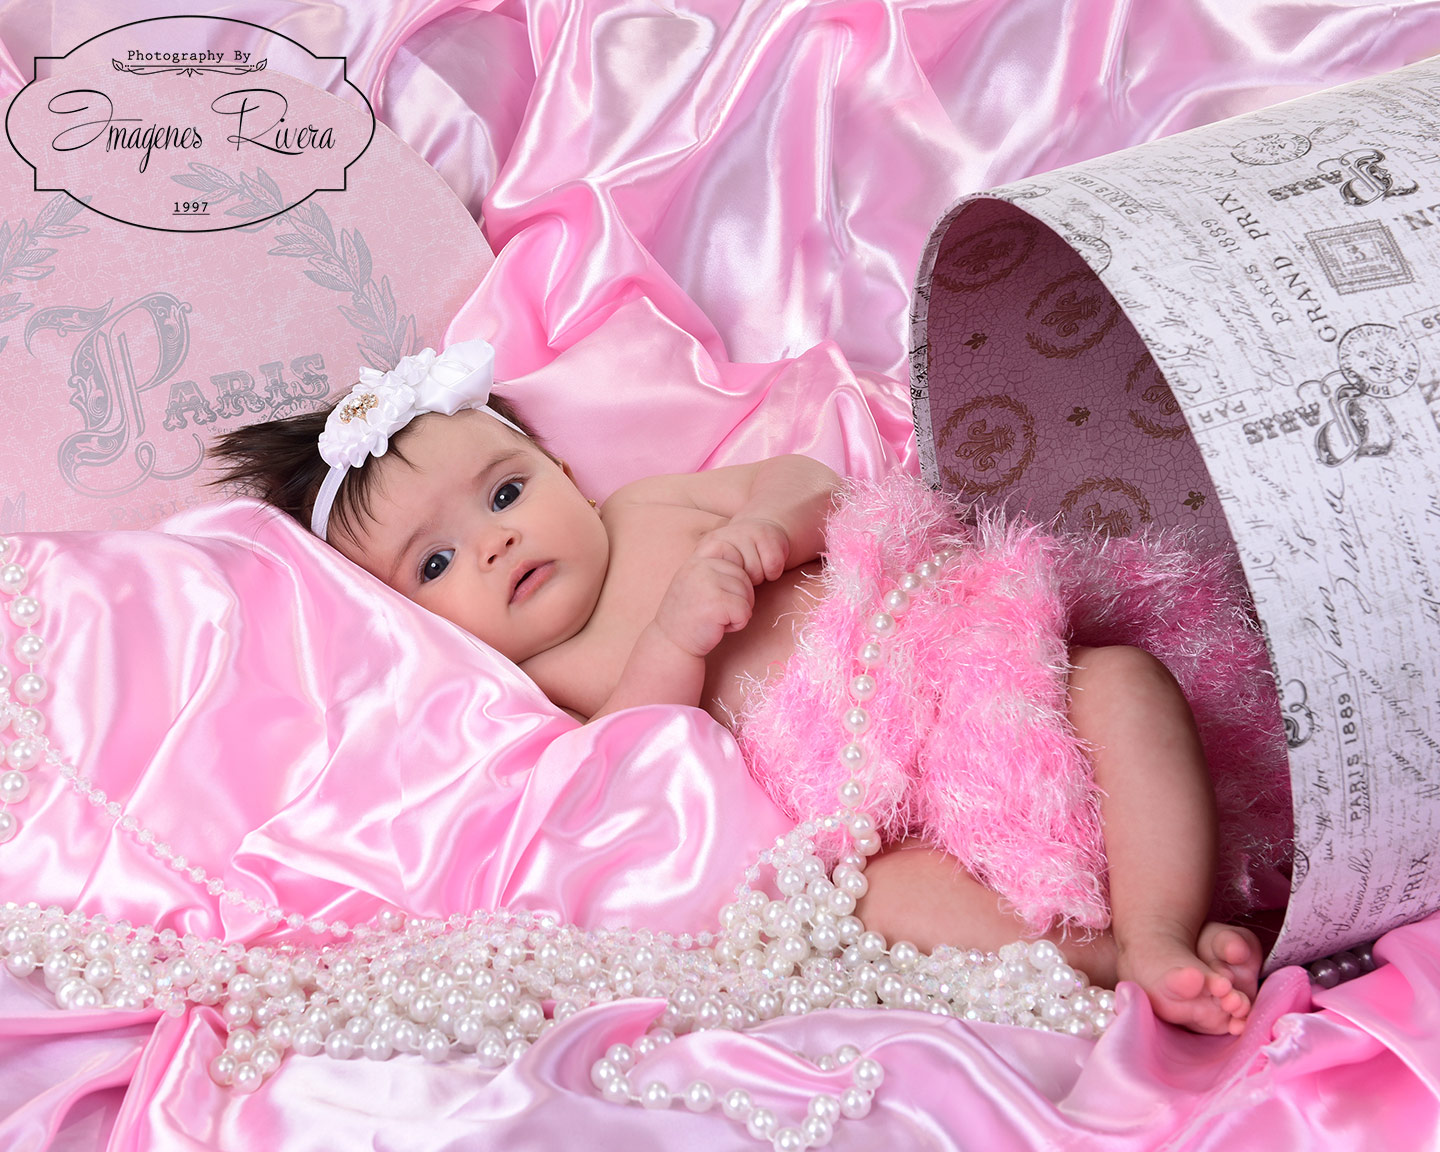 ♥ Grace´s milestone mini session in Kendall | Miami baby photographer Imagenes Rivera ♥